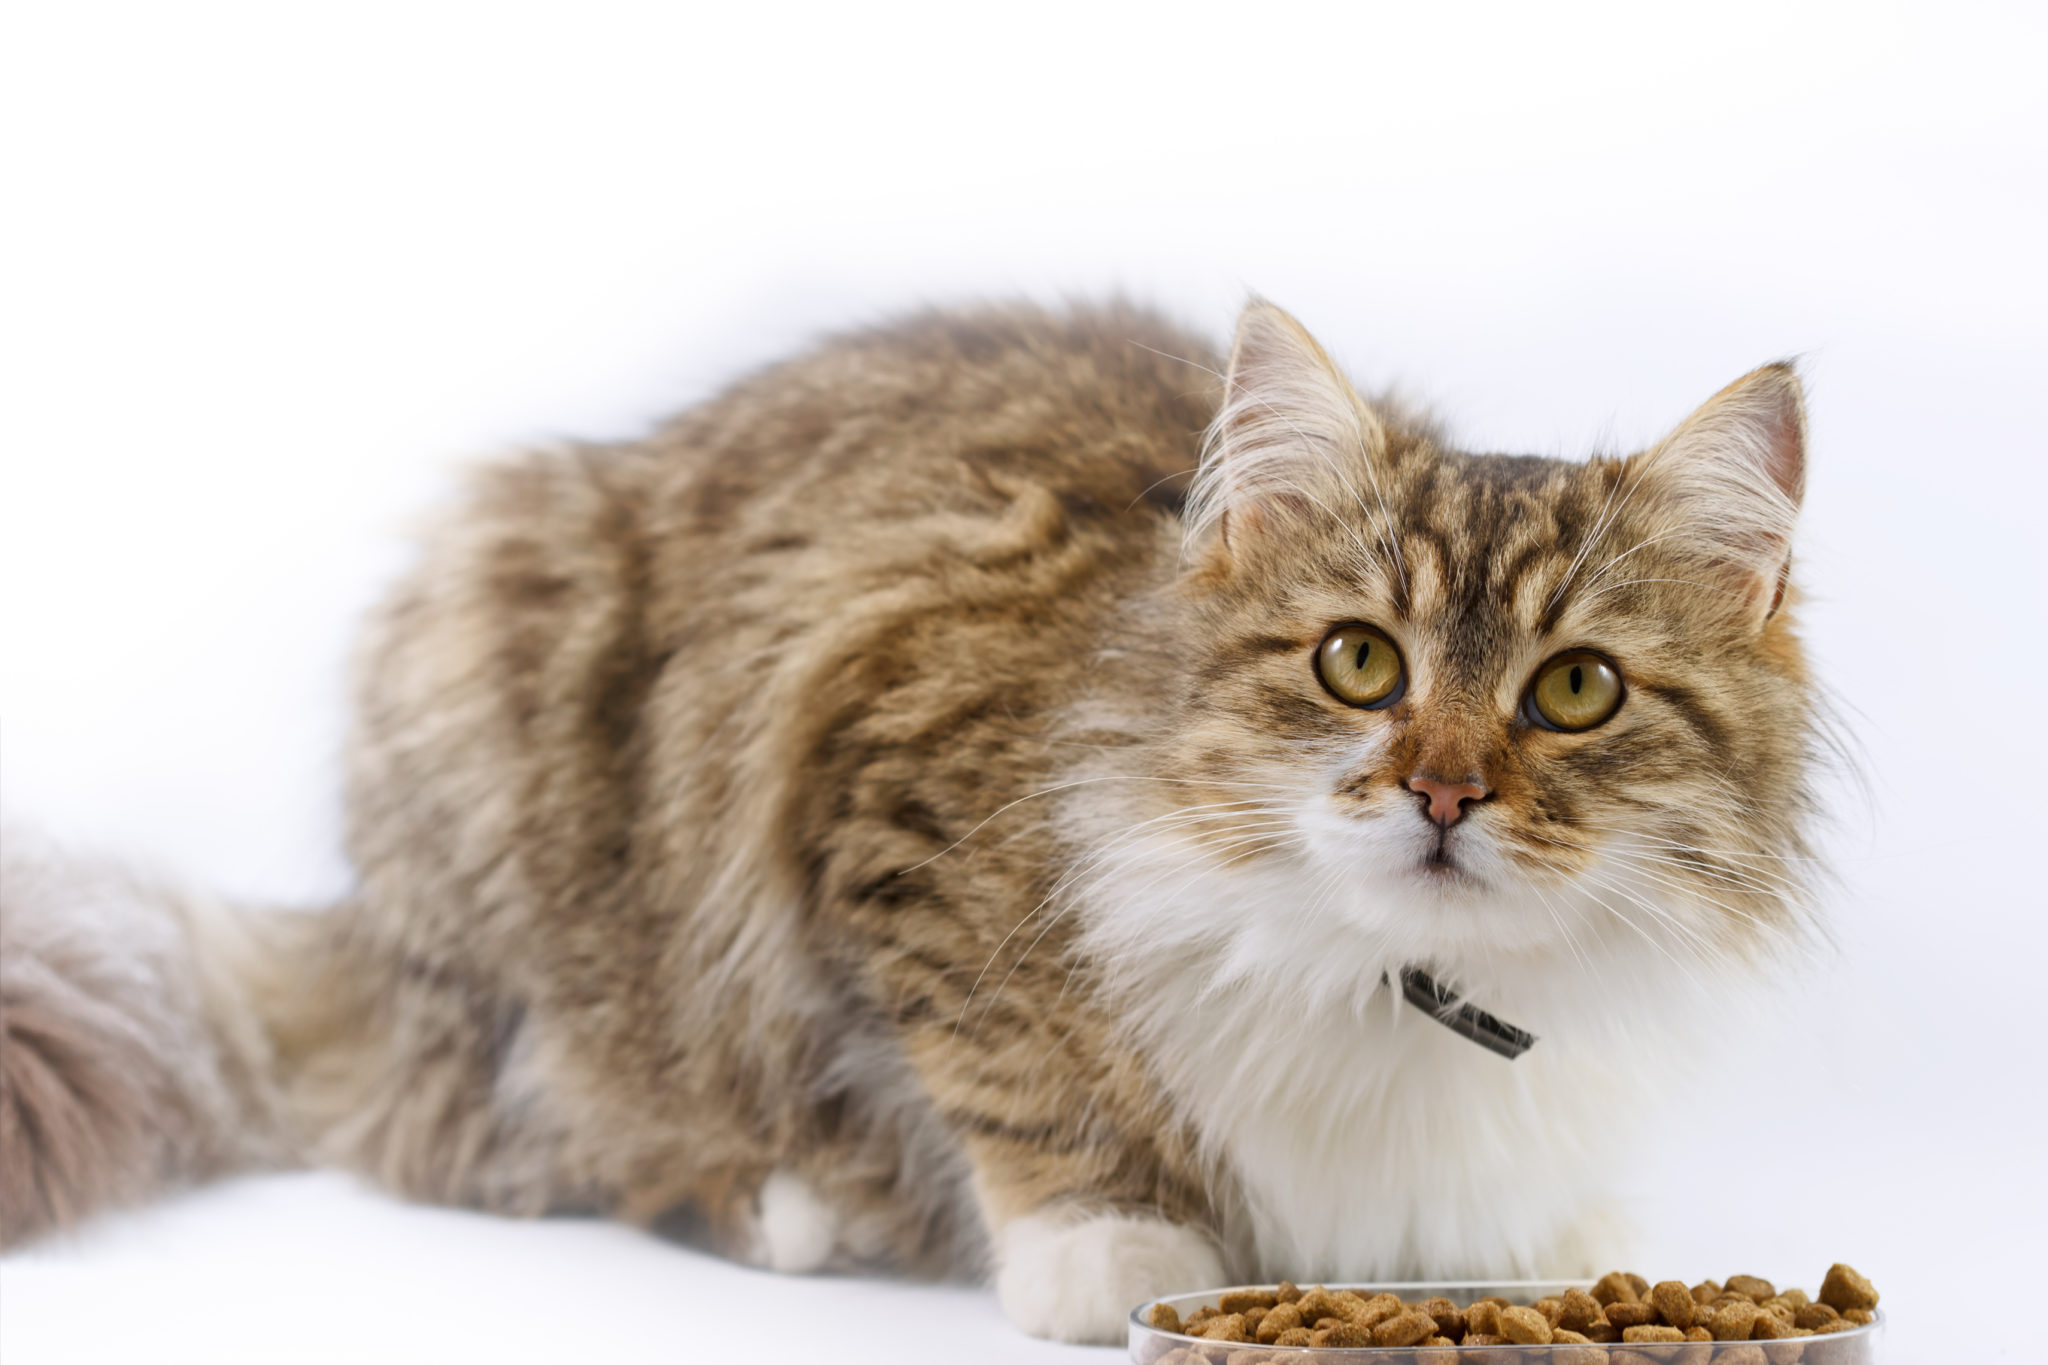 Mèo bị tiêu chảy bỏ ăn - Tình trạng nguy hiểm nếu không chữa trị kịp thời - Lifepet